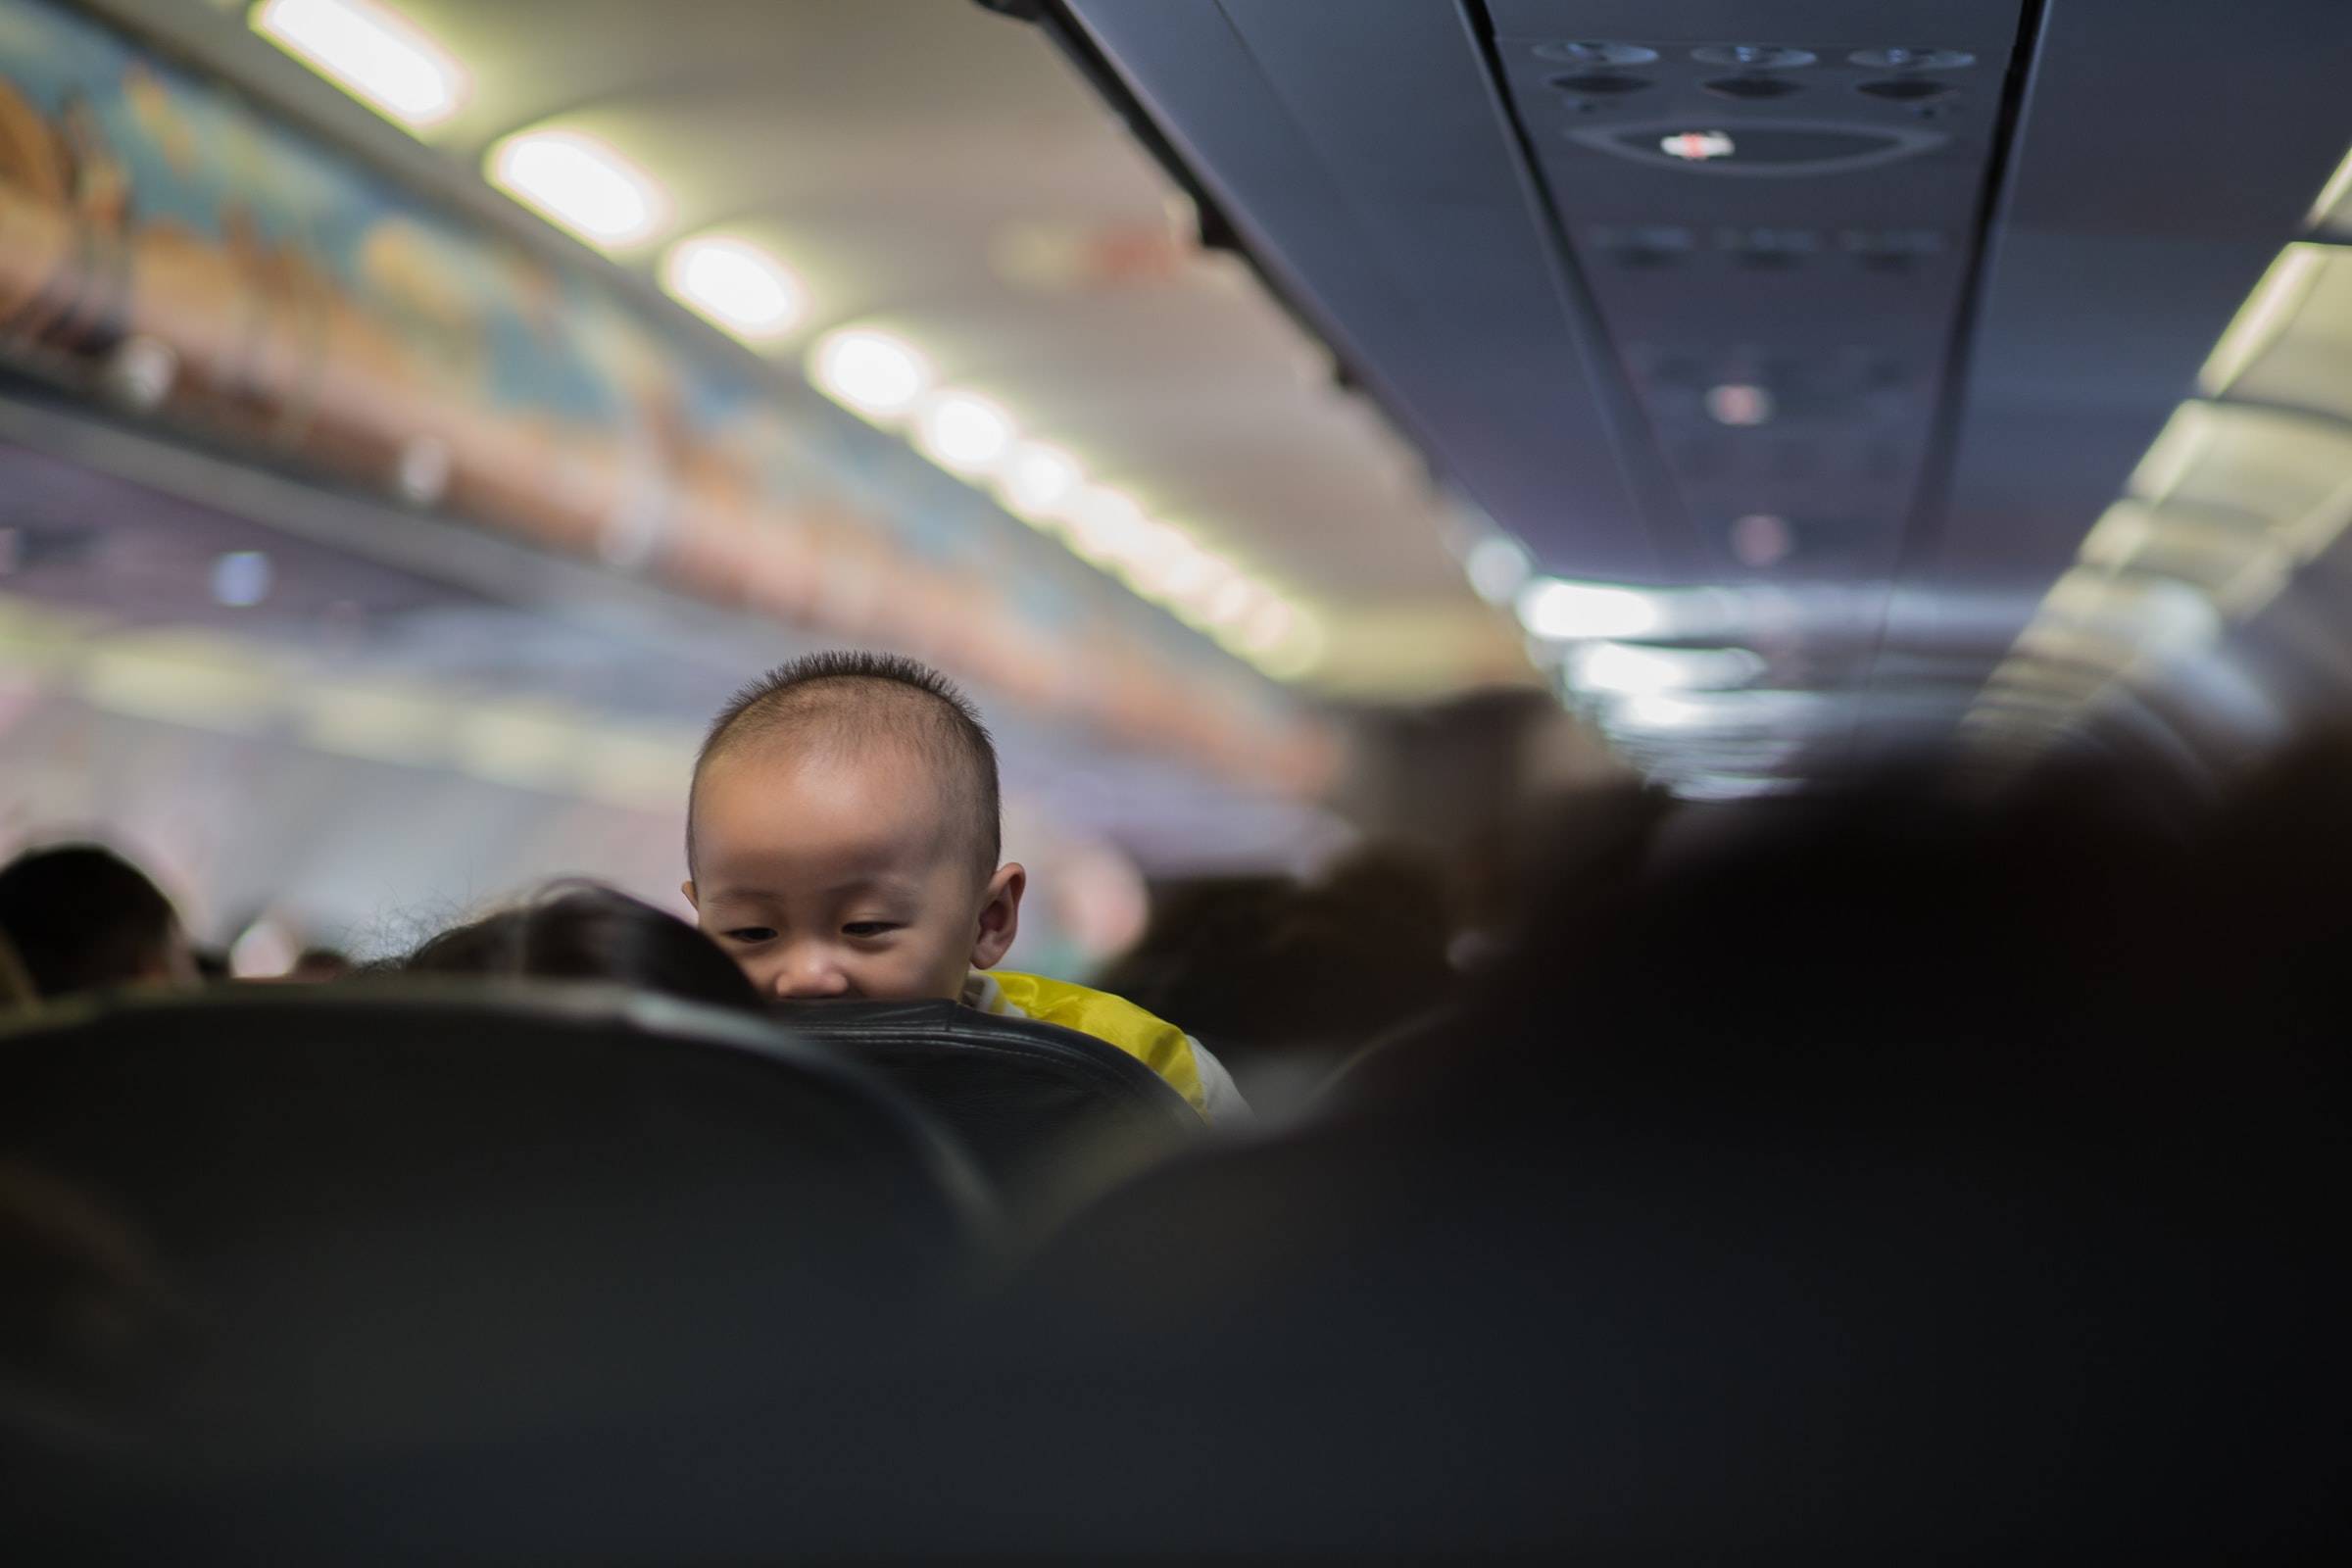 newborn air travel rules